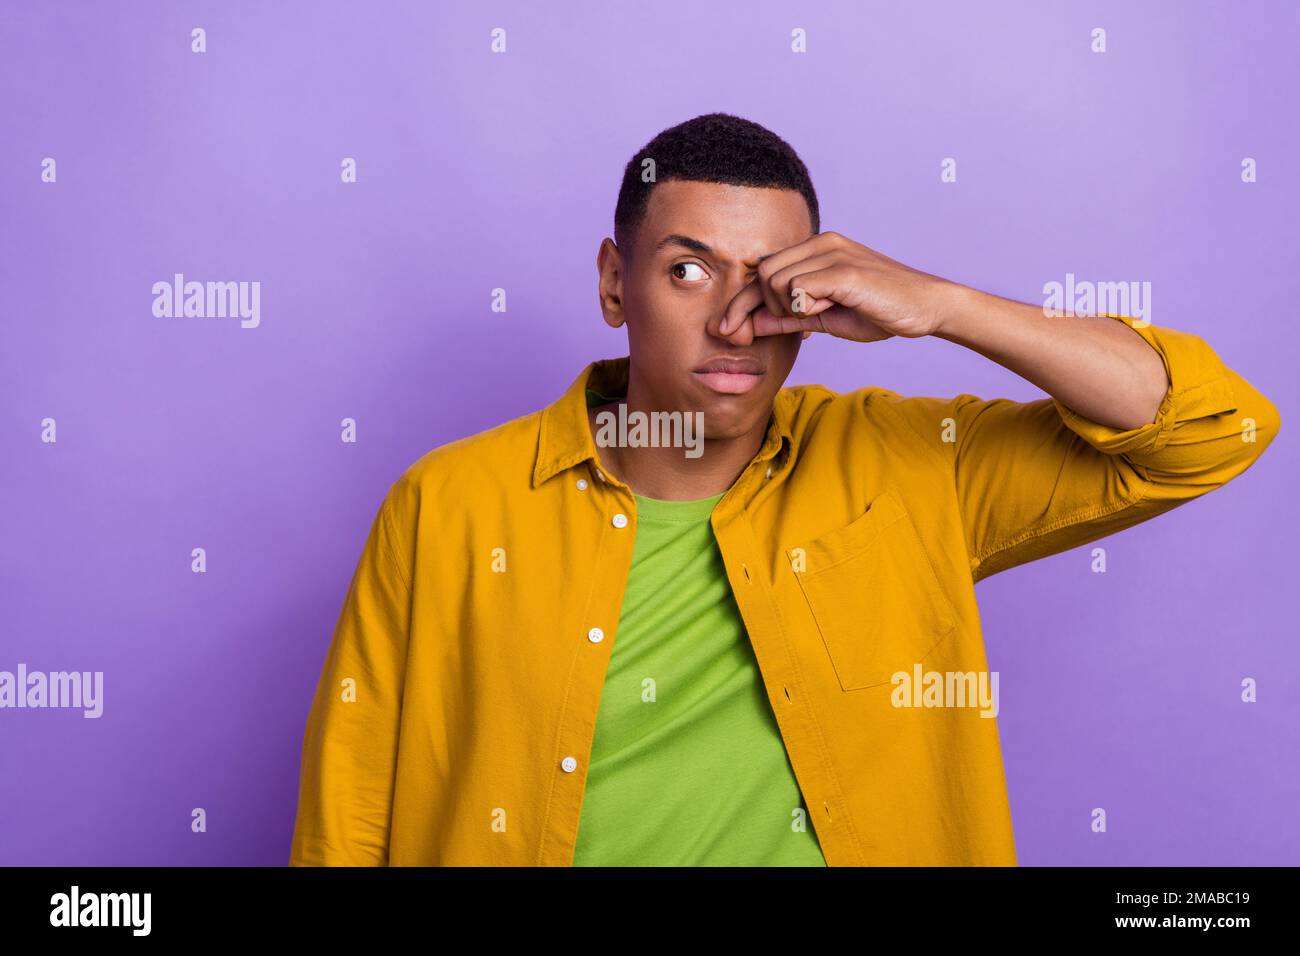 Foto ritratto di attraente giovane maschio naso chiuso evitare odore spazio vuoto vestito elegante vestito giallo isolato su sfondo di colore viola Foto Stock